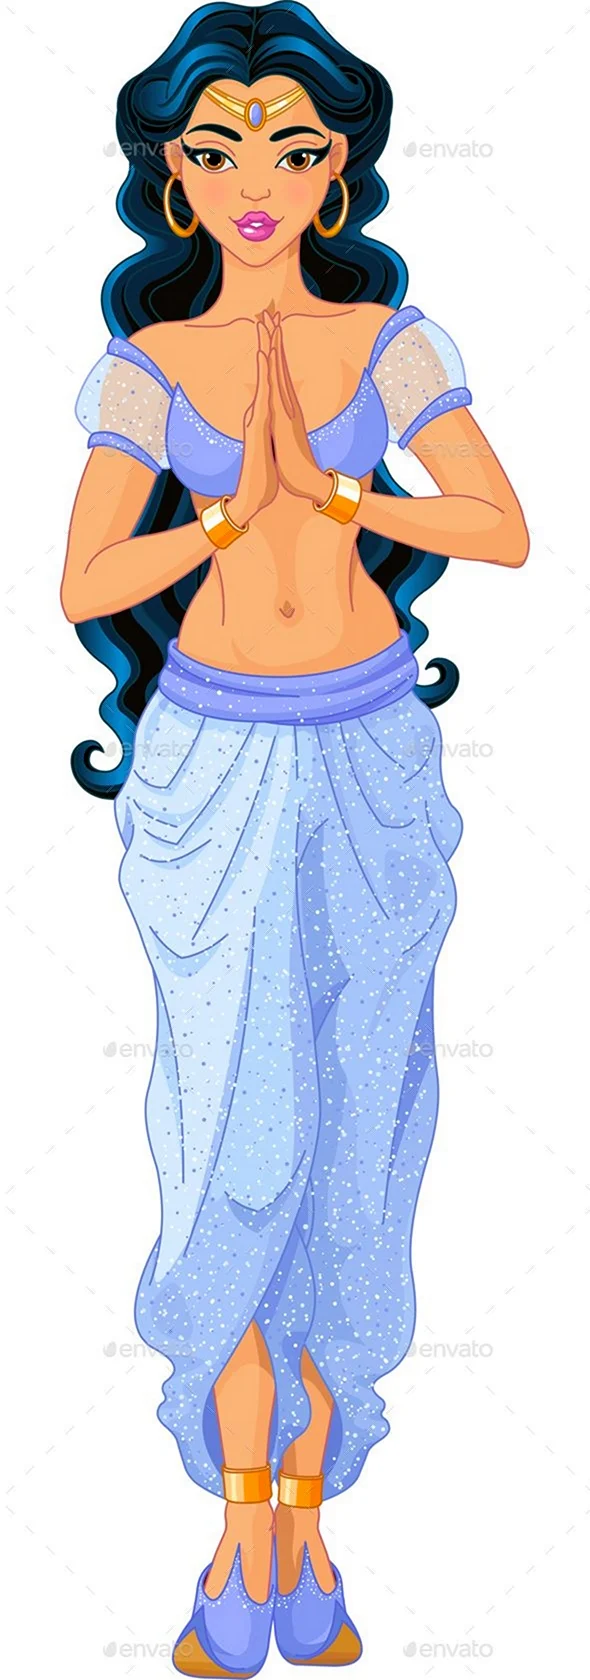 Арабская принцесса рисунок. Картинка из мультфильма